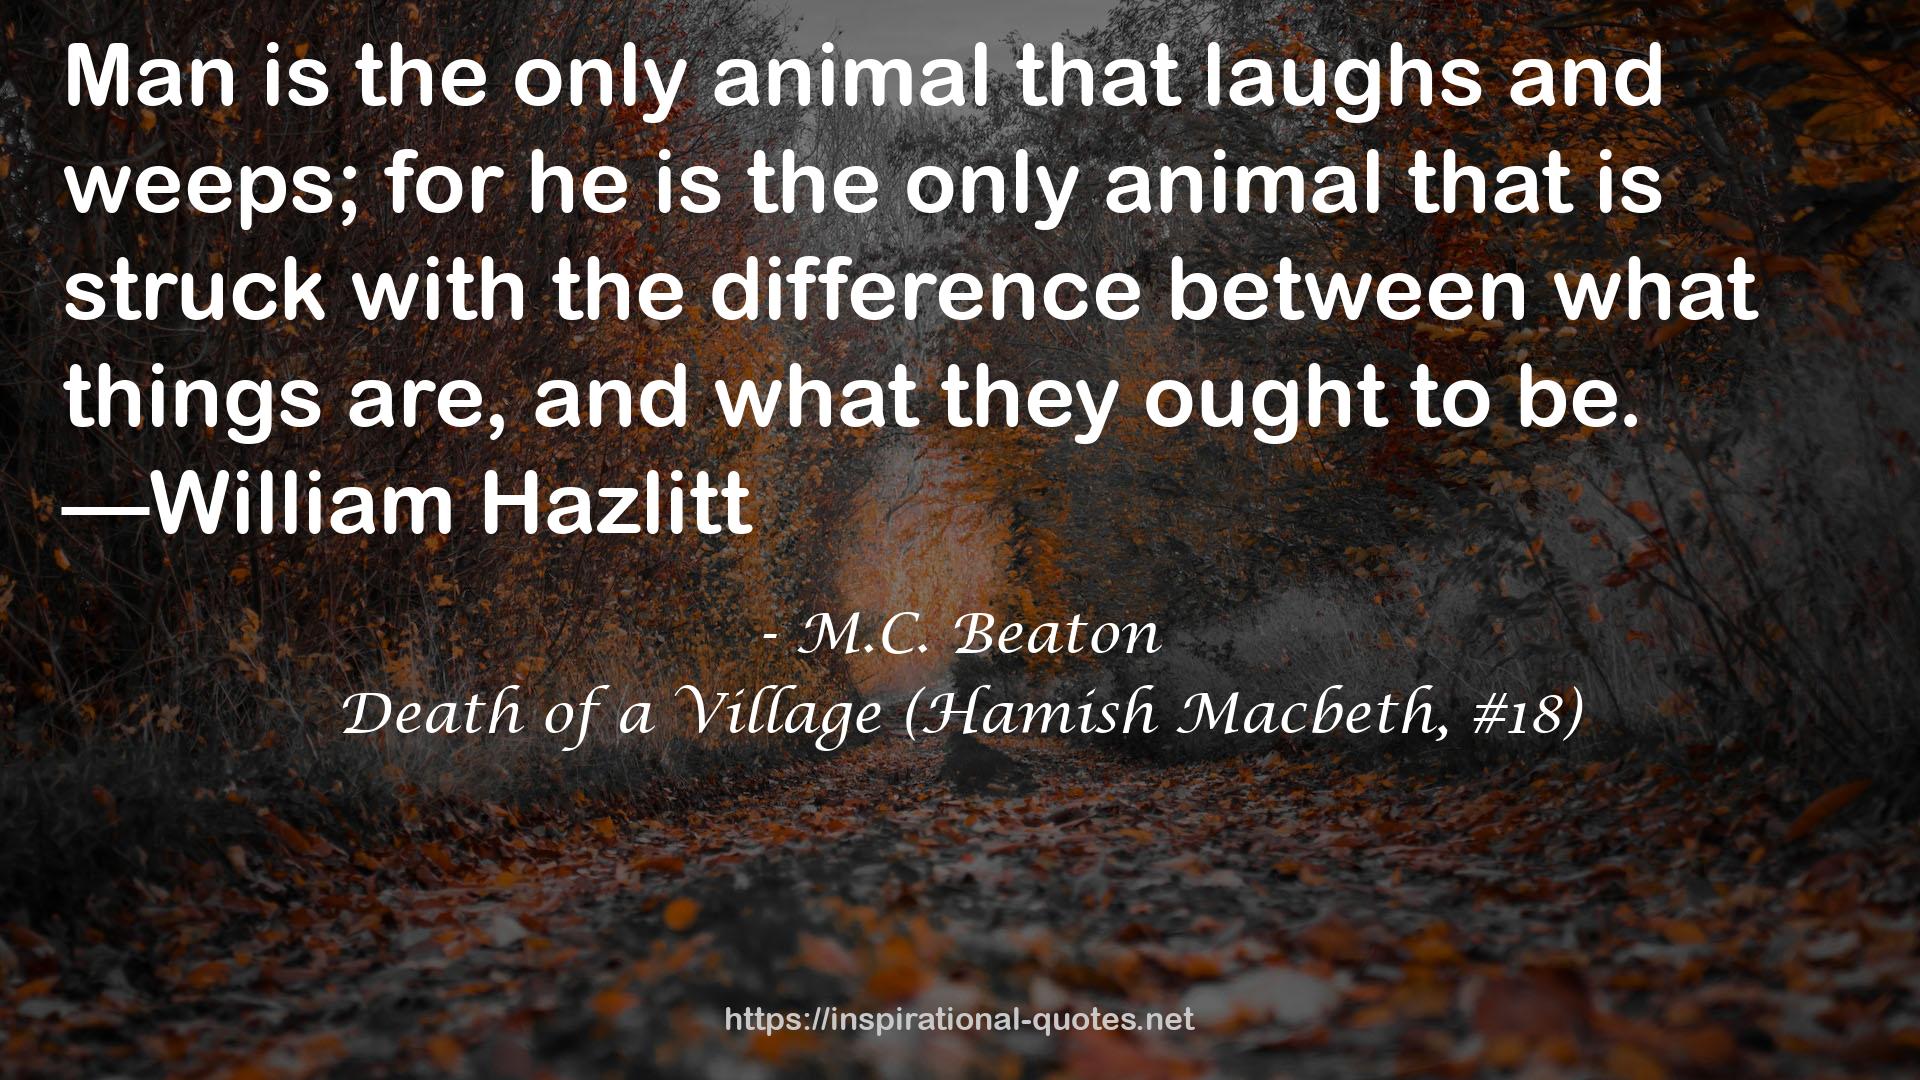 Death of a Village (Hamish Macbeth, #18) QUOTES